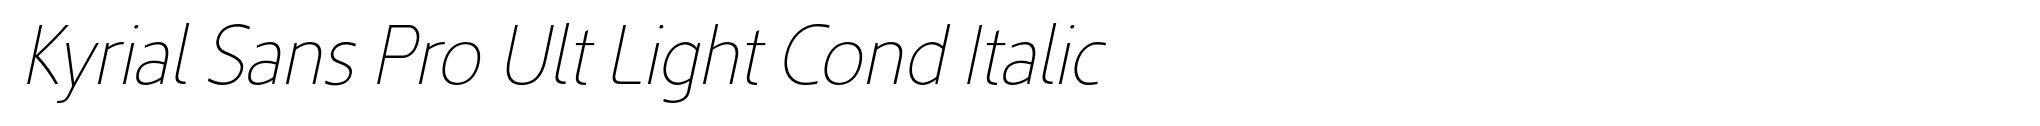 Kyrial Sans Pro Ult Light Cond Italic image